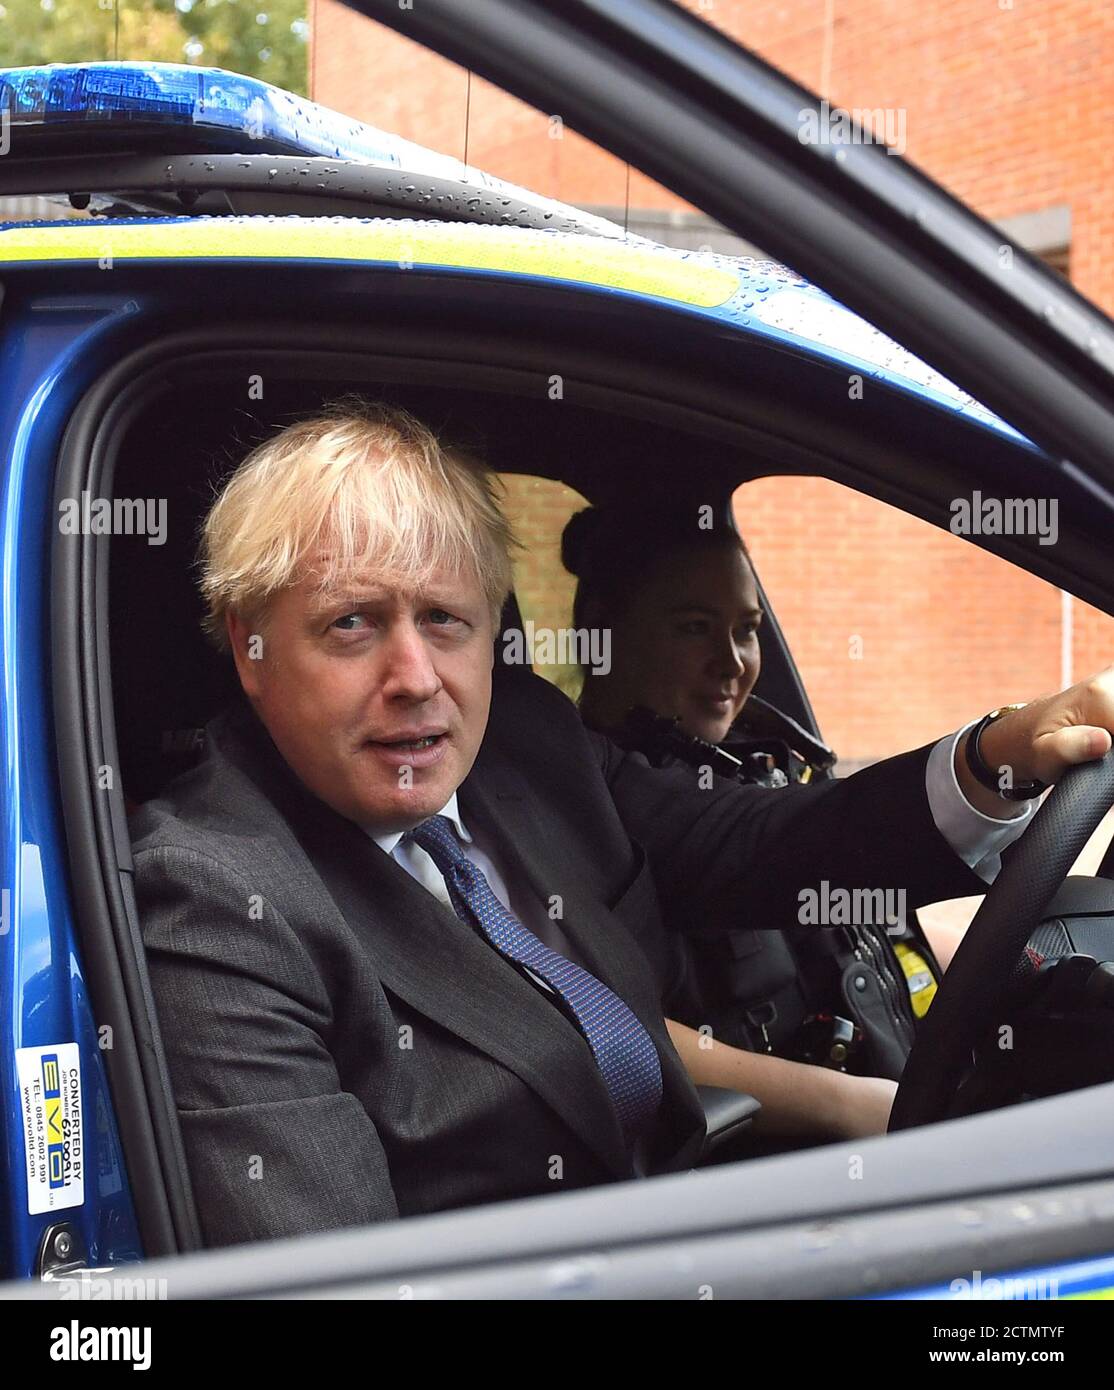 Il primo ministro Boris Johnson è seduto al posto di guida di un veicolo di polizia, con un agente di polizia nel sedile del passeggero, durante una visita alla sede centrale della polizia del Northamptonshire a Northampton. Foto Stock